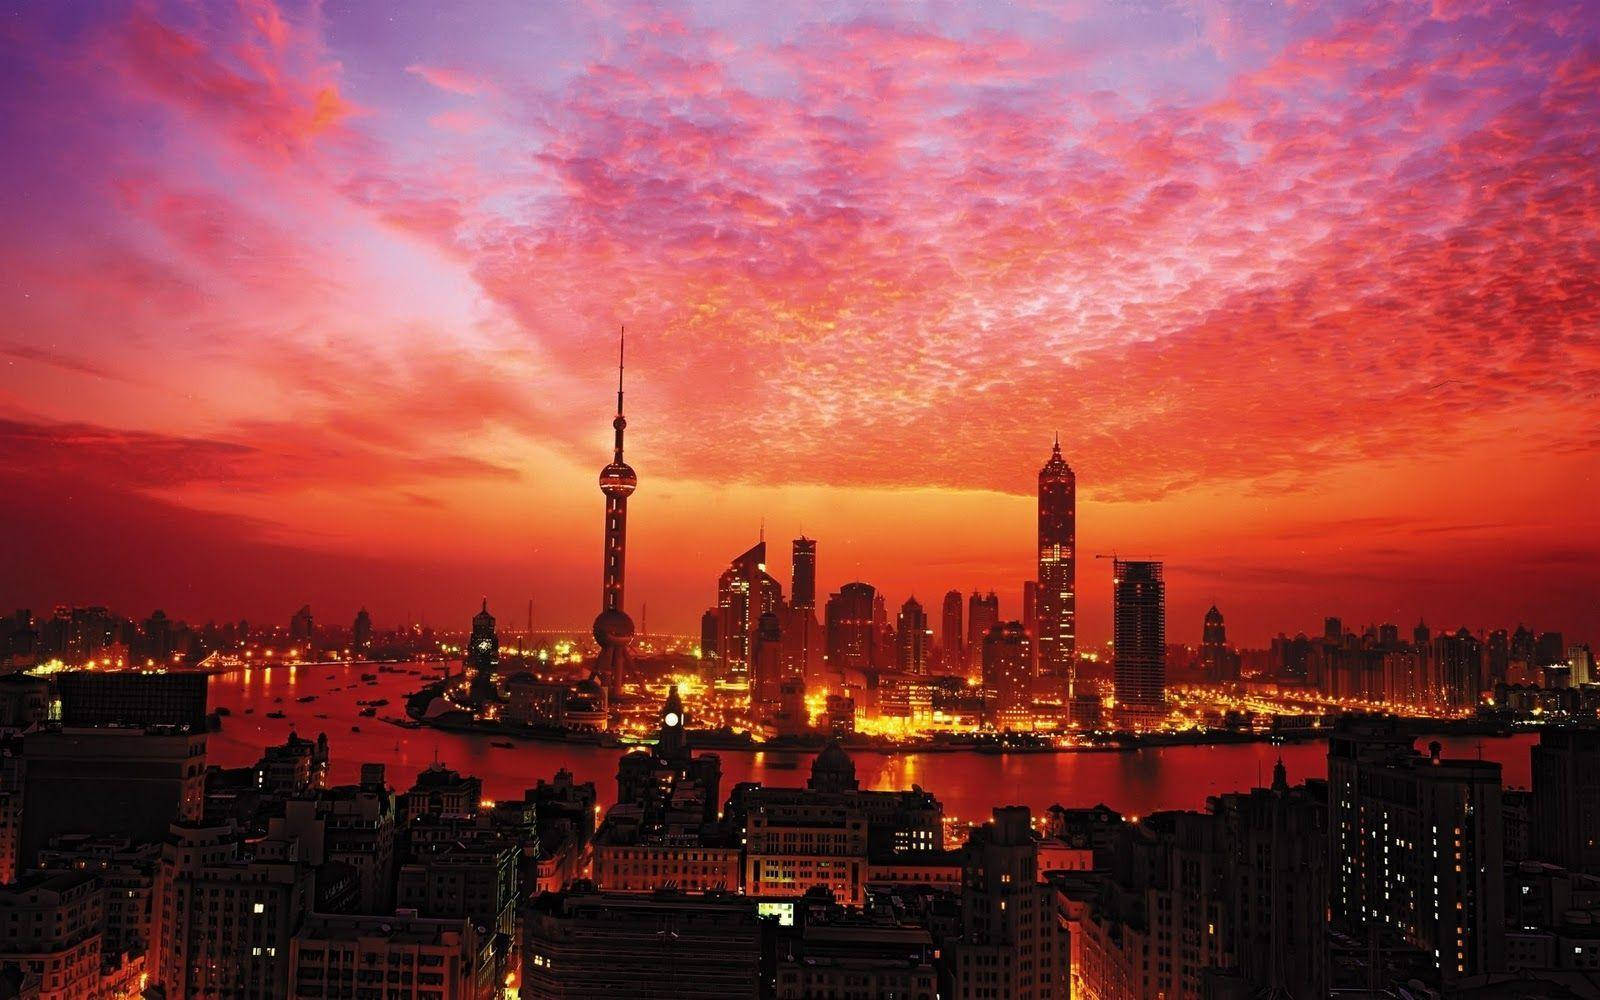 Random Shanghai City Skyline Sunset